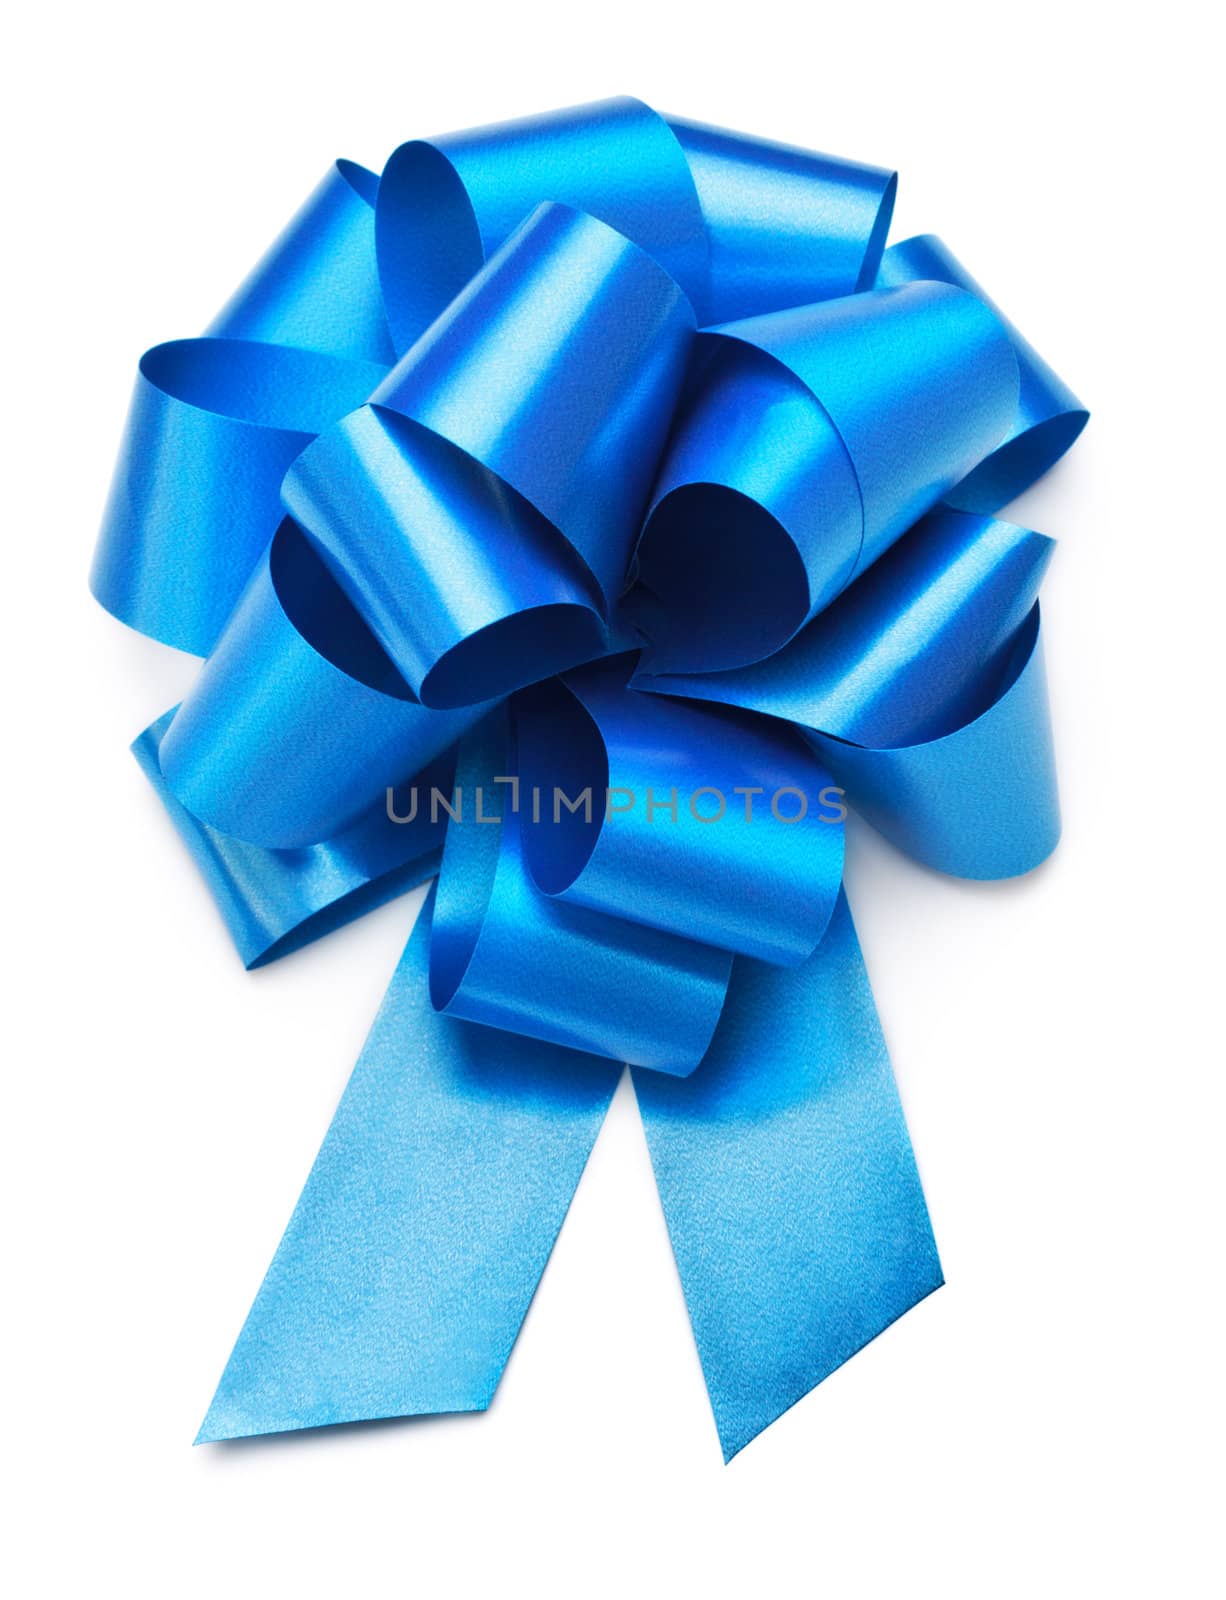 single blue bow isolated on white background